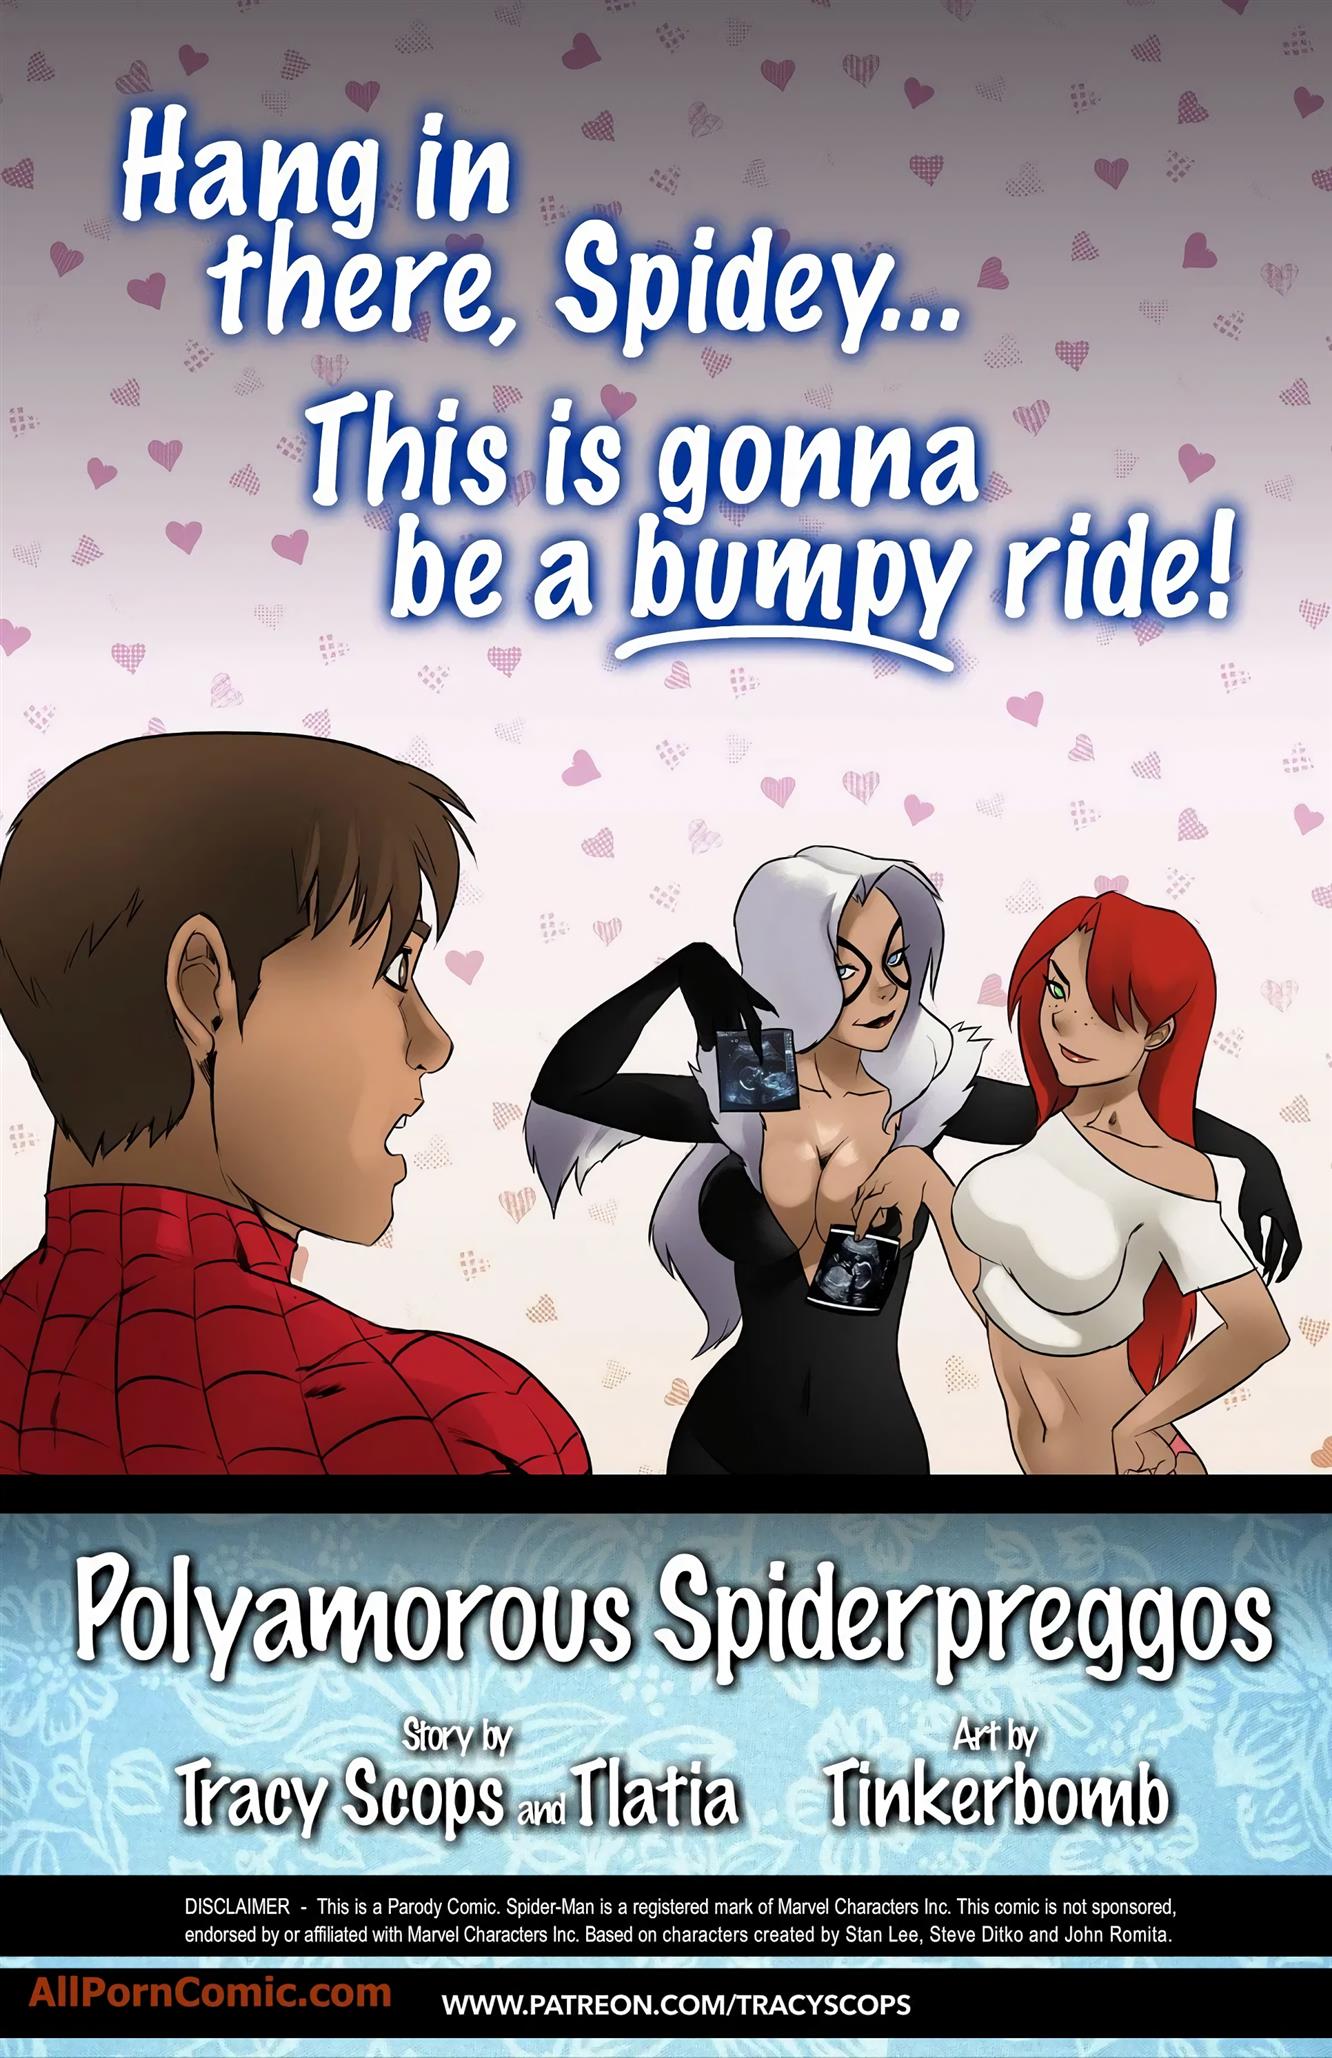 The Polyamorous SpiderPreggos [Tracy Scops]